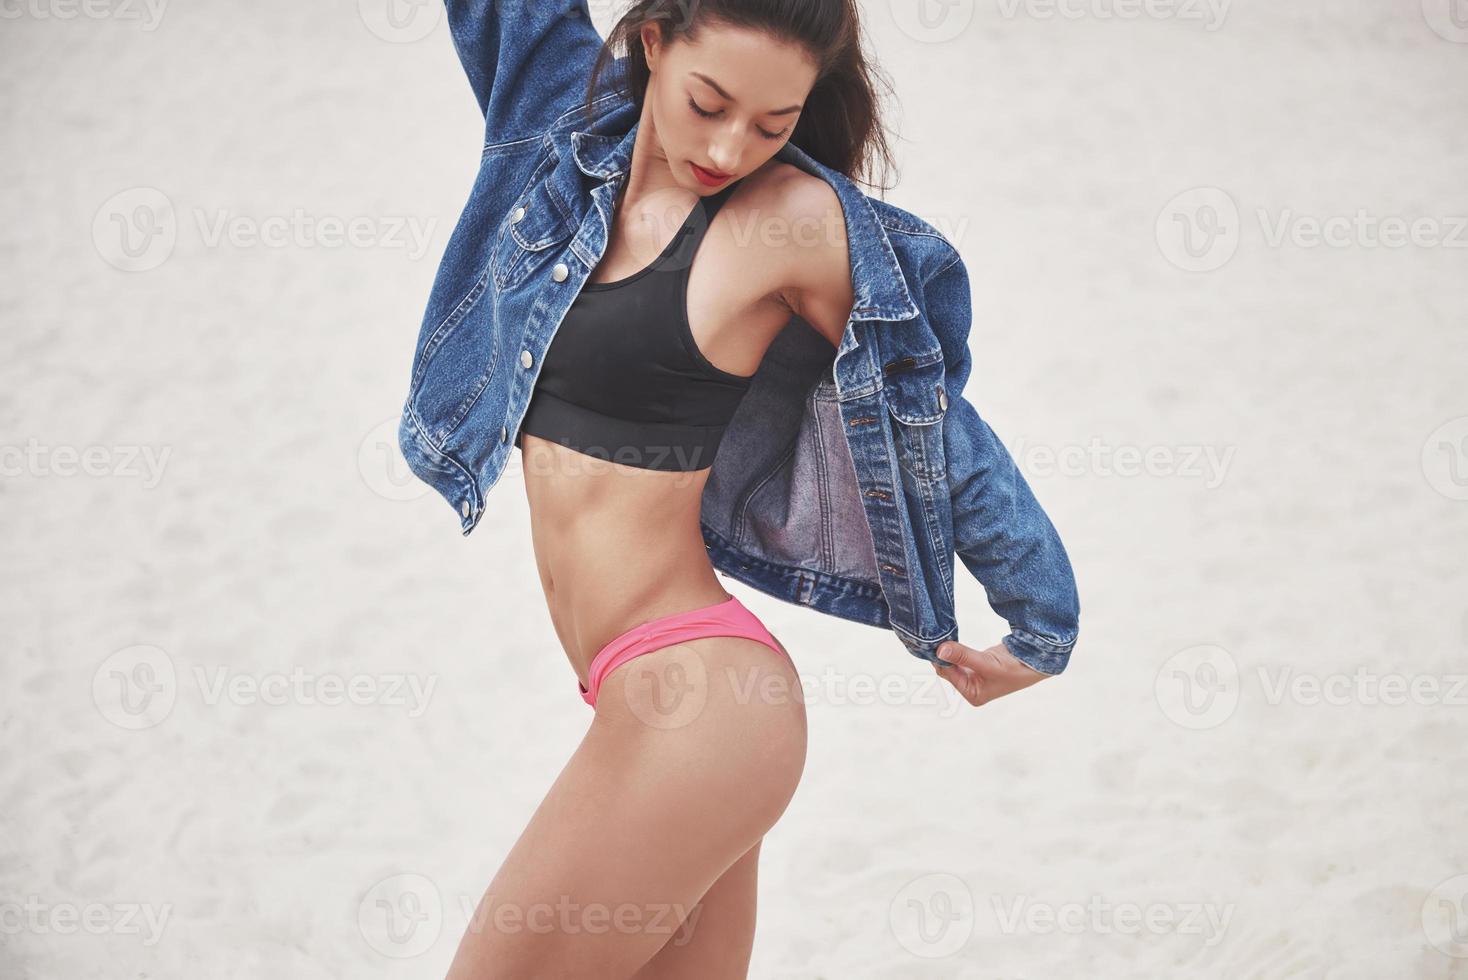 hermosa chica de lujo delgada en bikini y jeans jaket en la playa de arena en una isla tropical. sexy cuerpo bronceado y figura perfecta foto